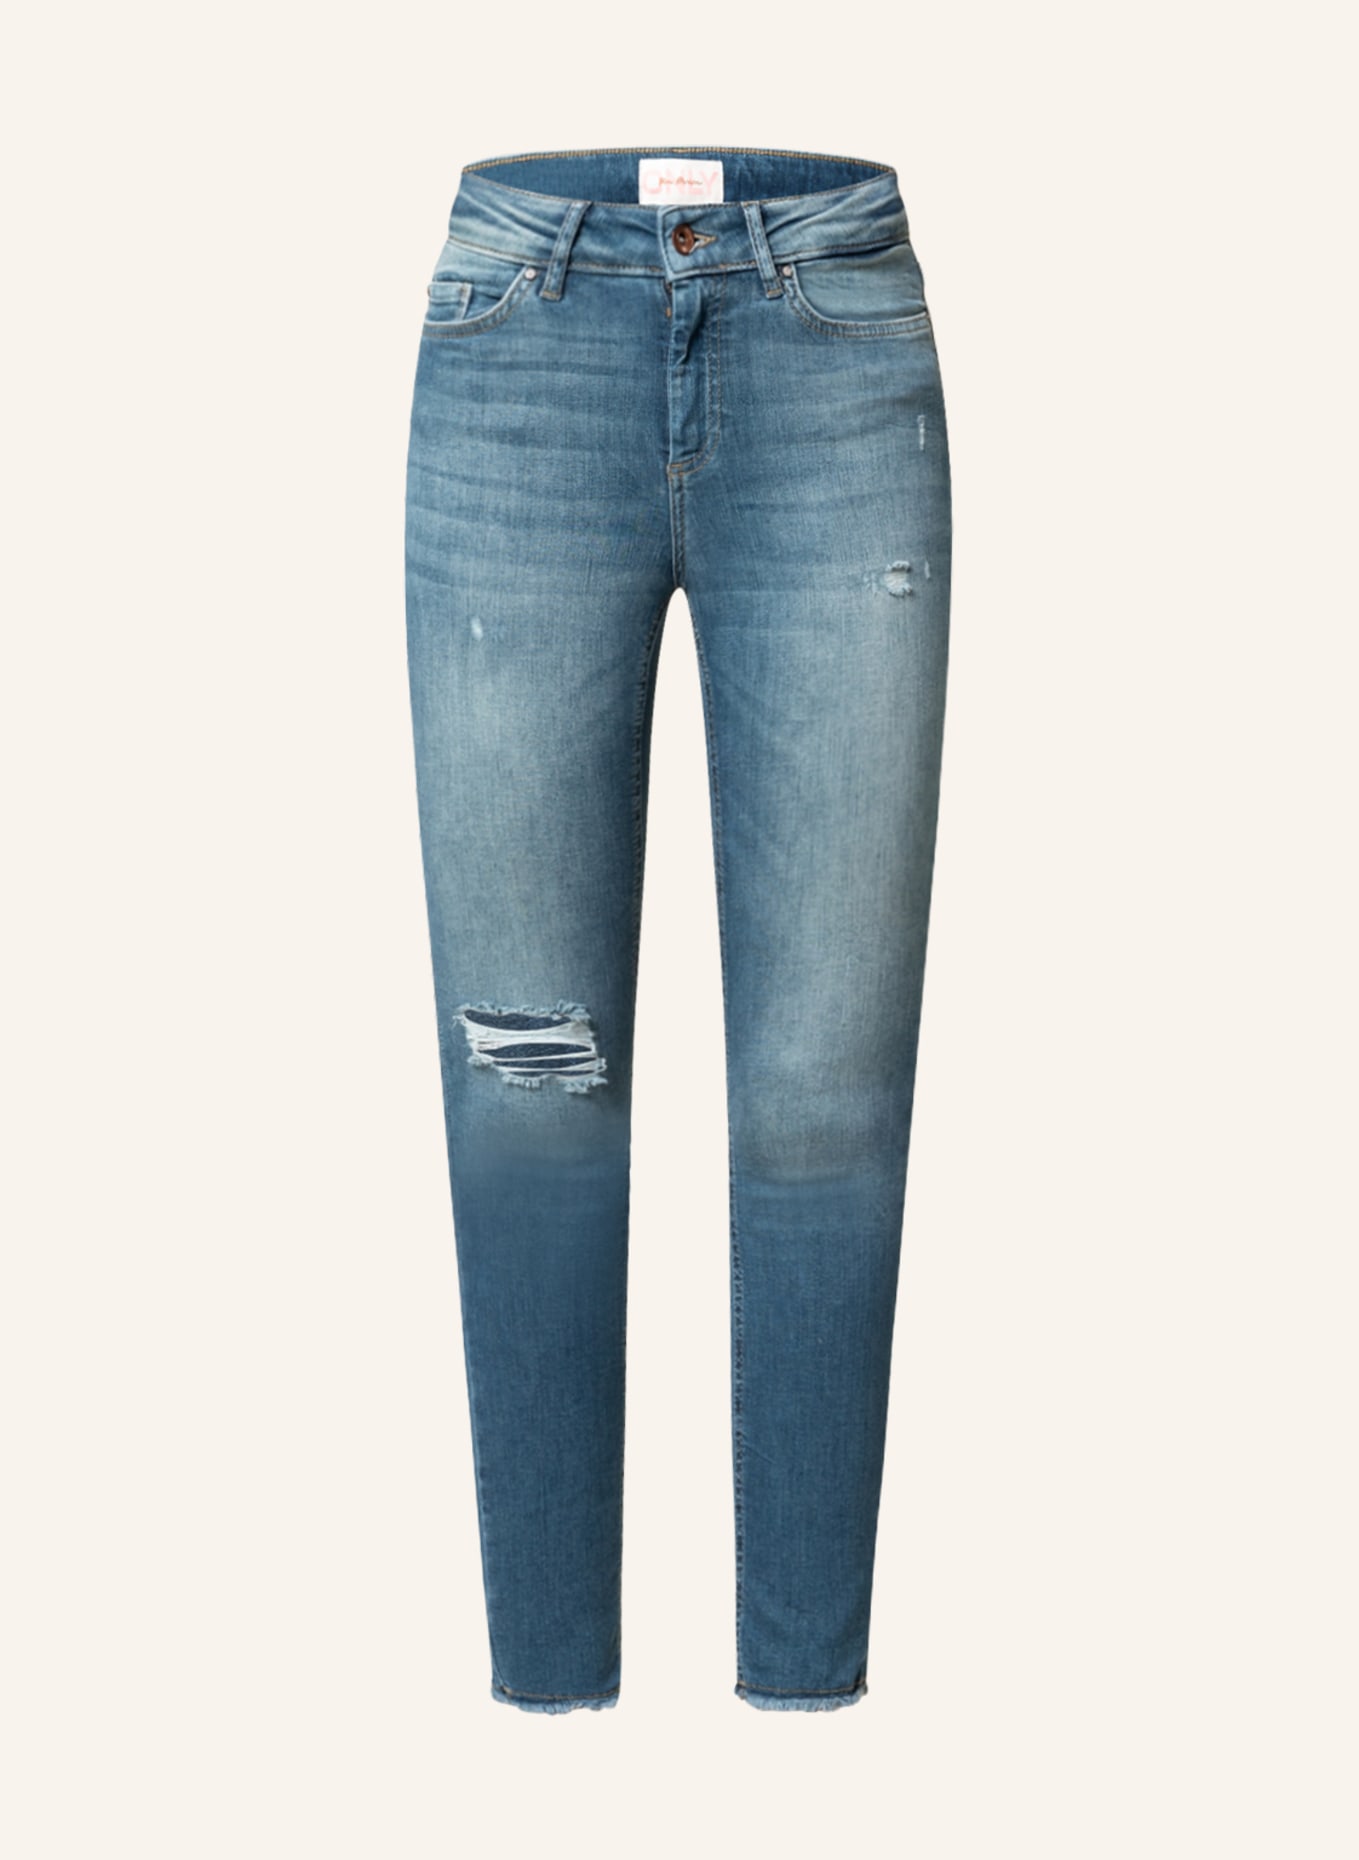 ONLY Skinny jeans, Color: Dark Medium Blue Denim (Image 1)